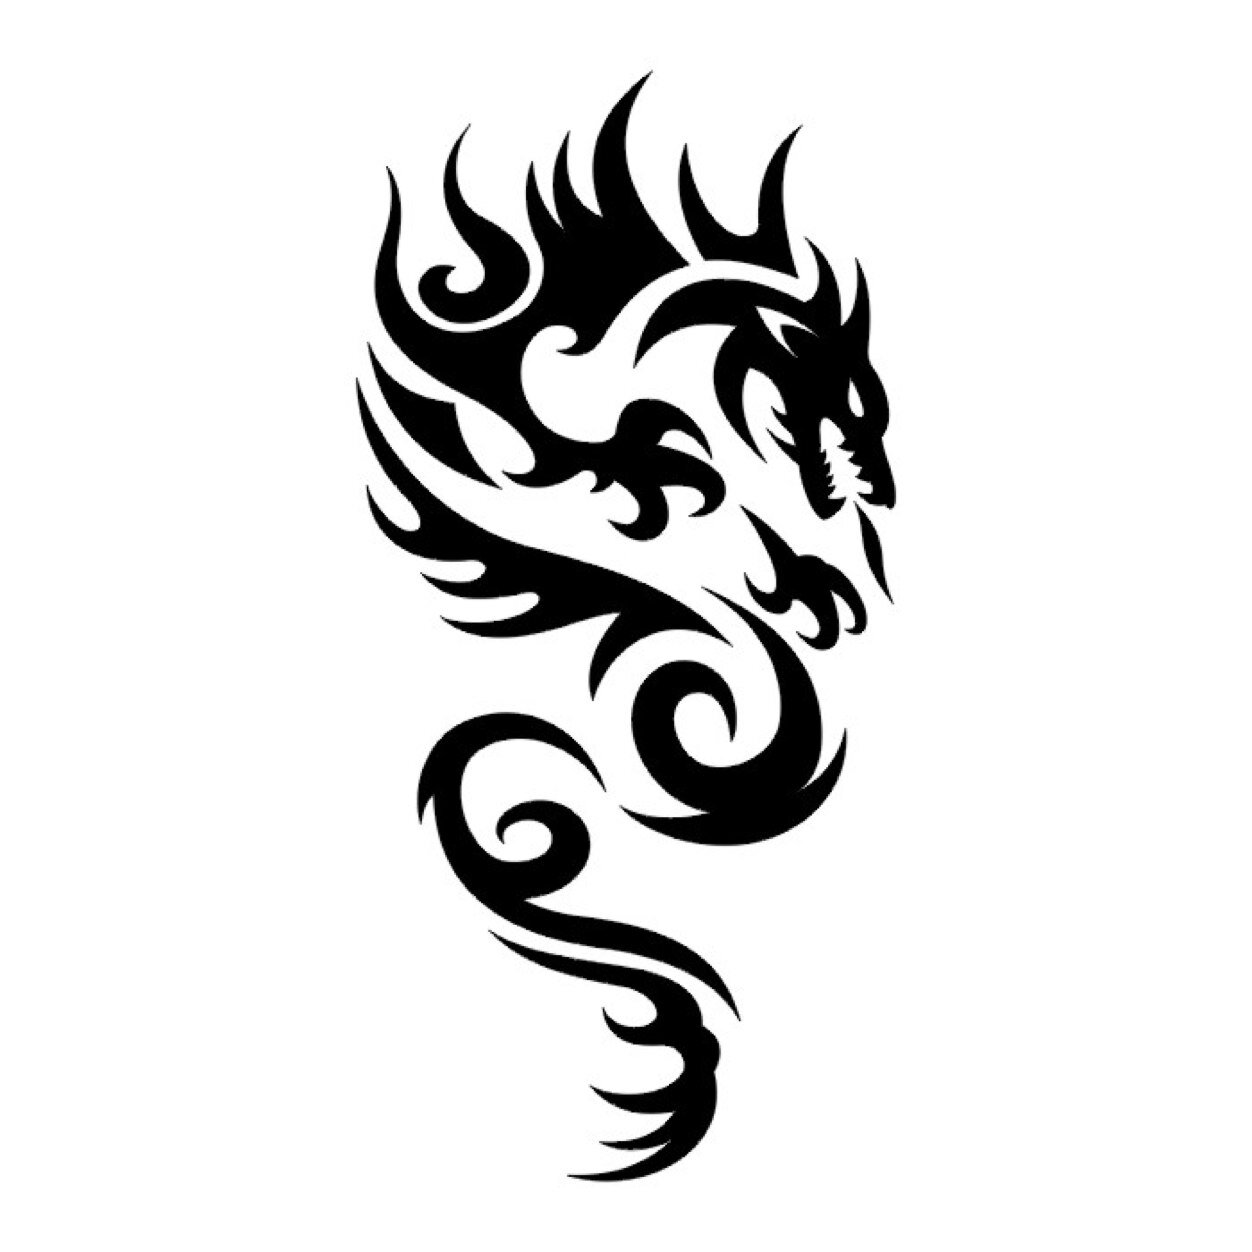 Nice-And-Small-Tribal-Dragon-Tattoo-Design.jpeg